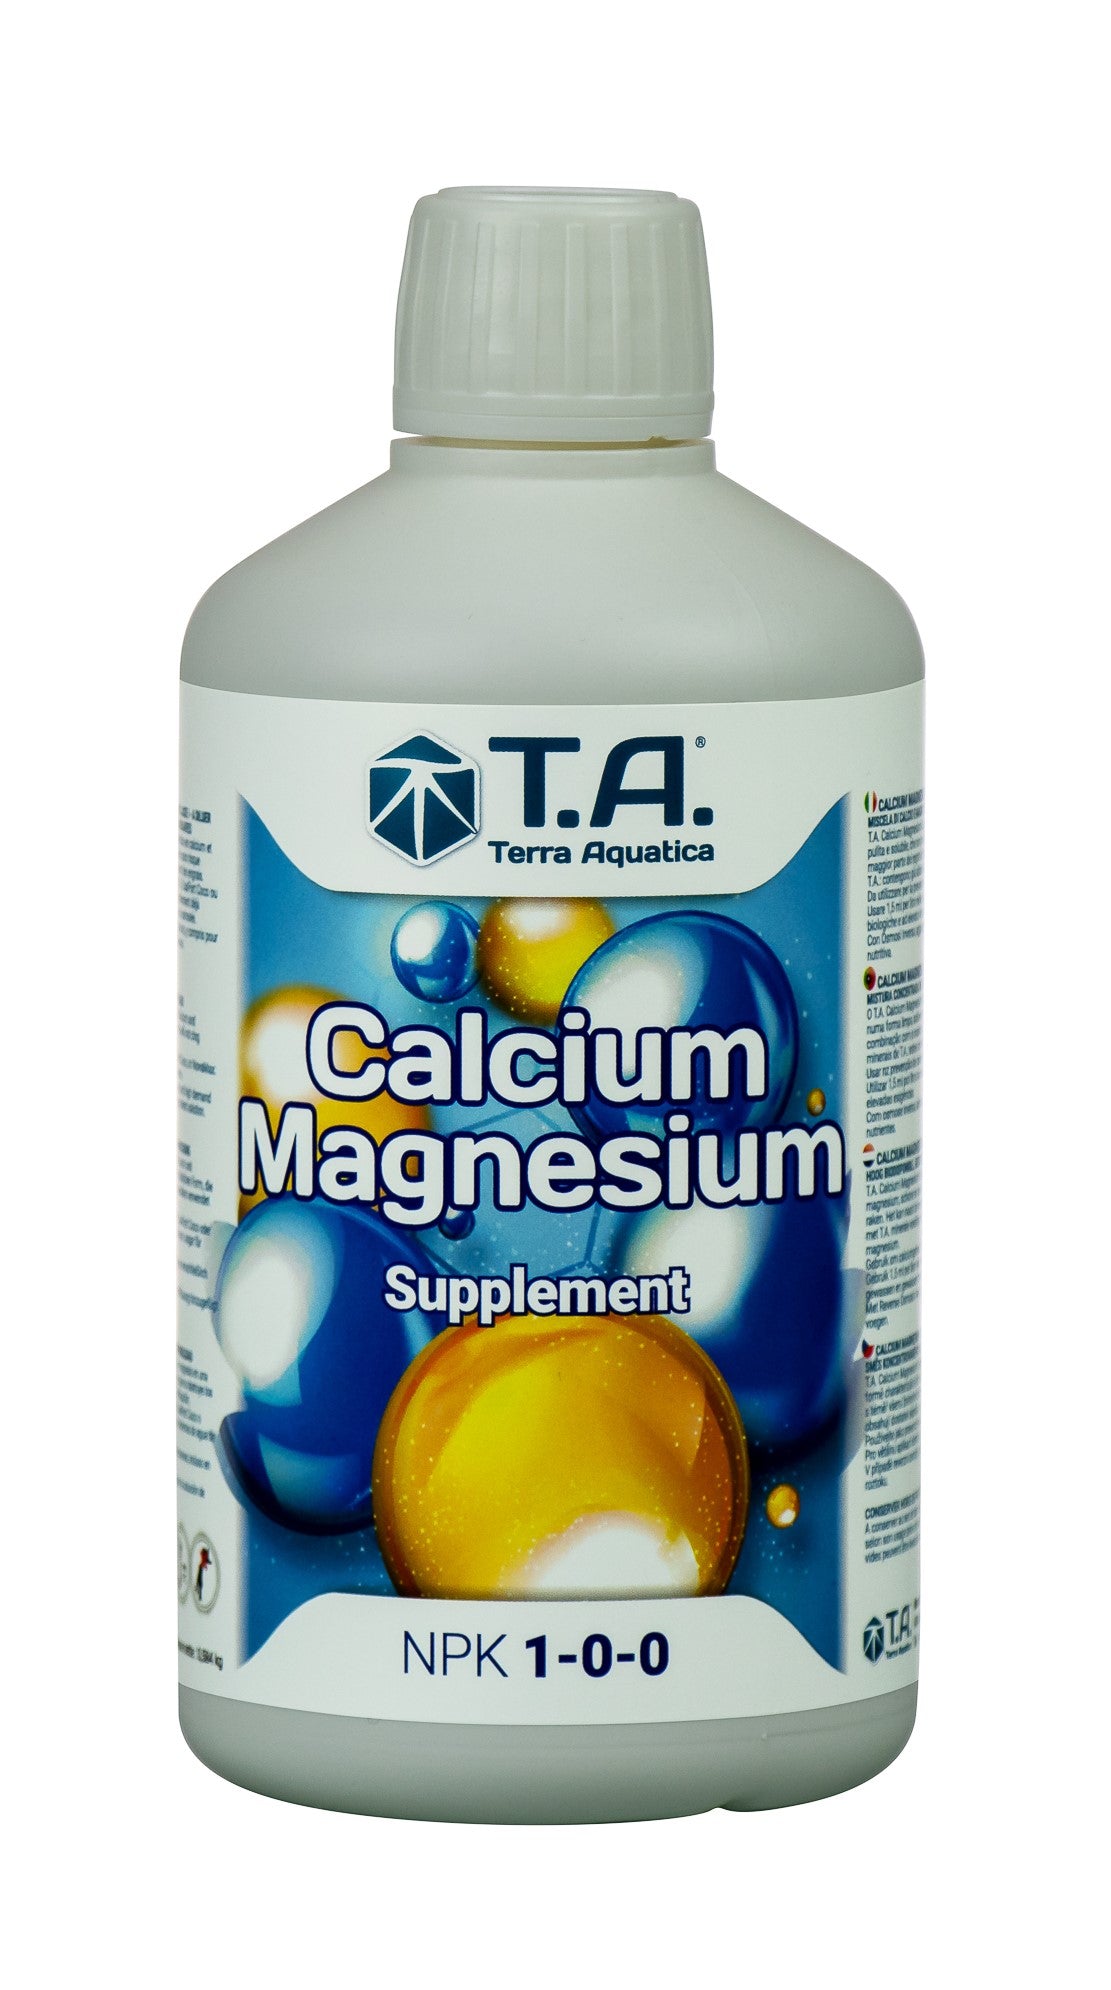 Calcium Magnesium - კალციუმ მაგნიუმი